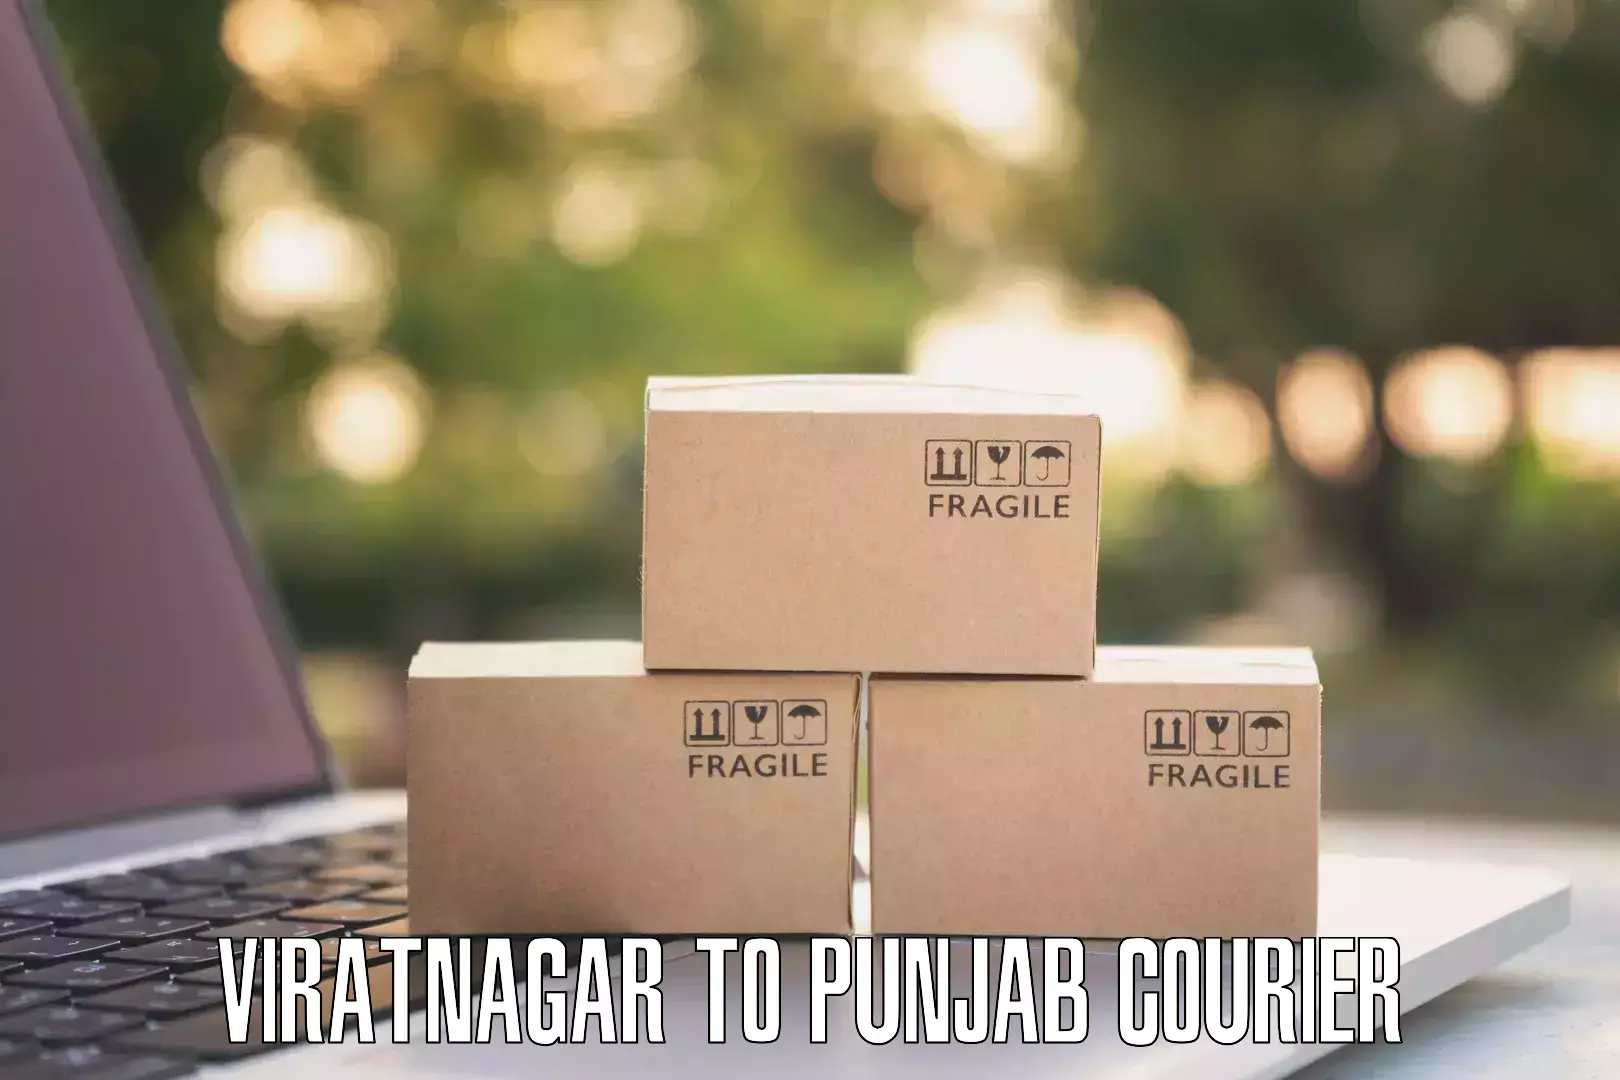 Quick booking process Viratnagar to Patiala